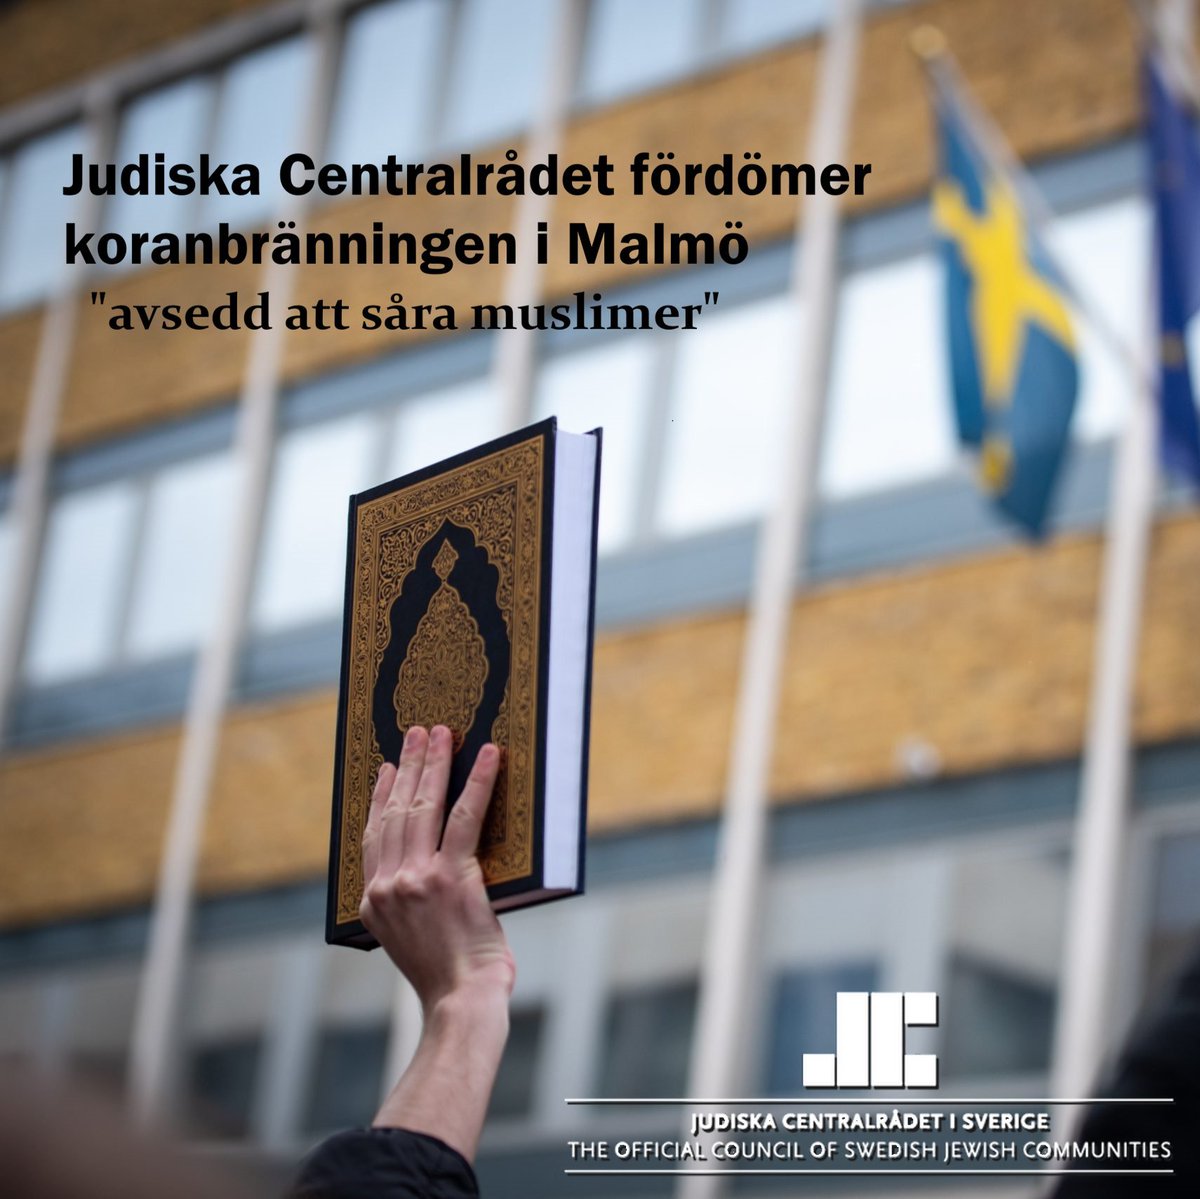 Nu styr ju inte Judiska Centralrådet Sverige. 
Det är bra om man vet sin plats och respekterar vår demokrati och vår yttrandefrihet. 
Jag fördömer deras fördömande. 
#svpol